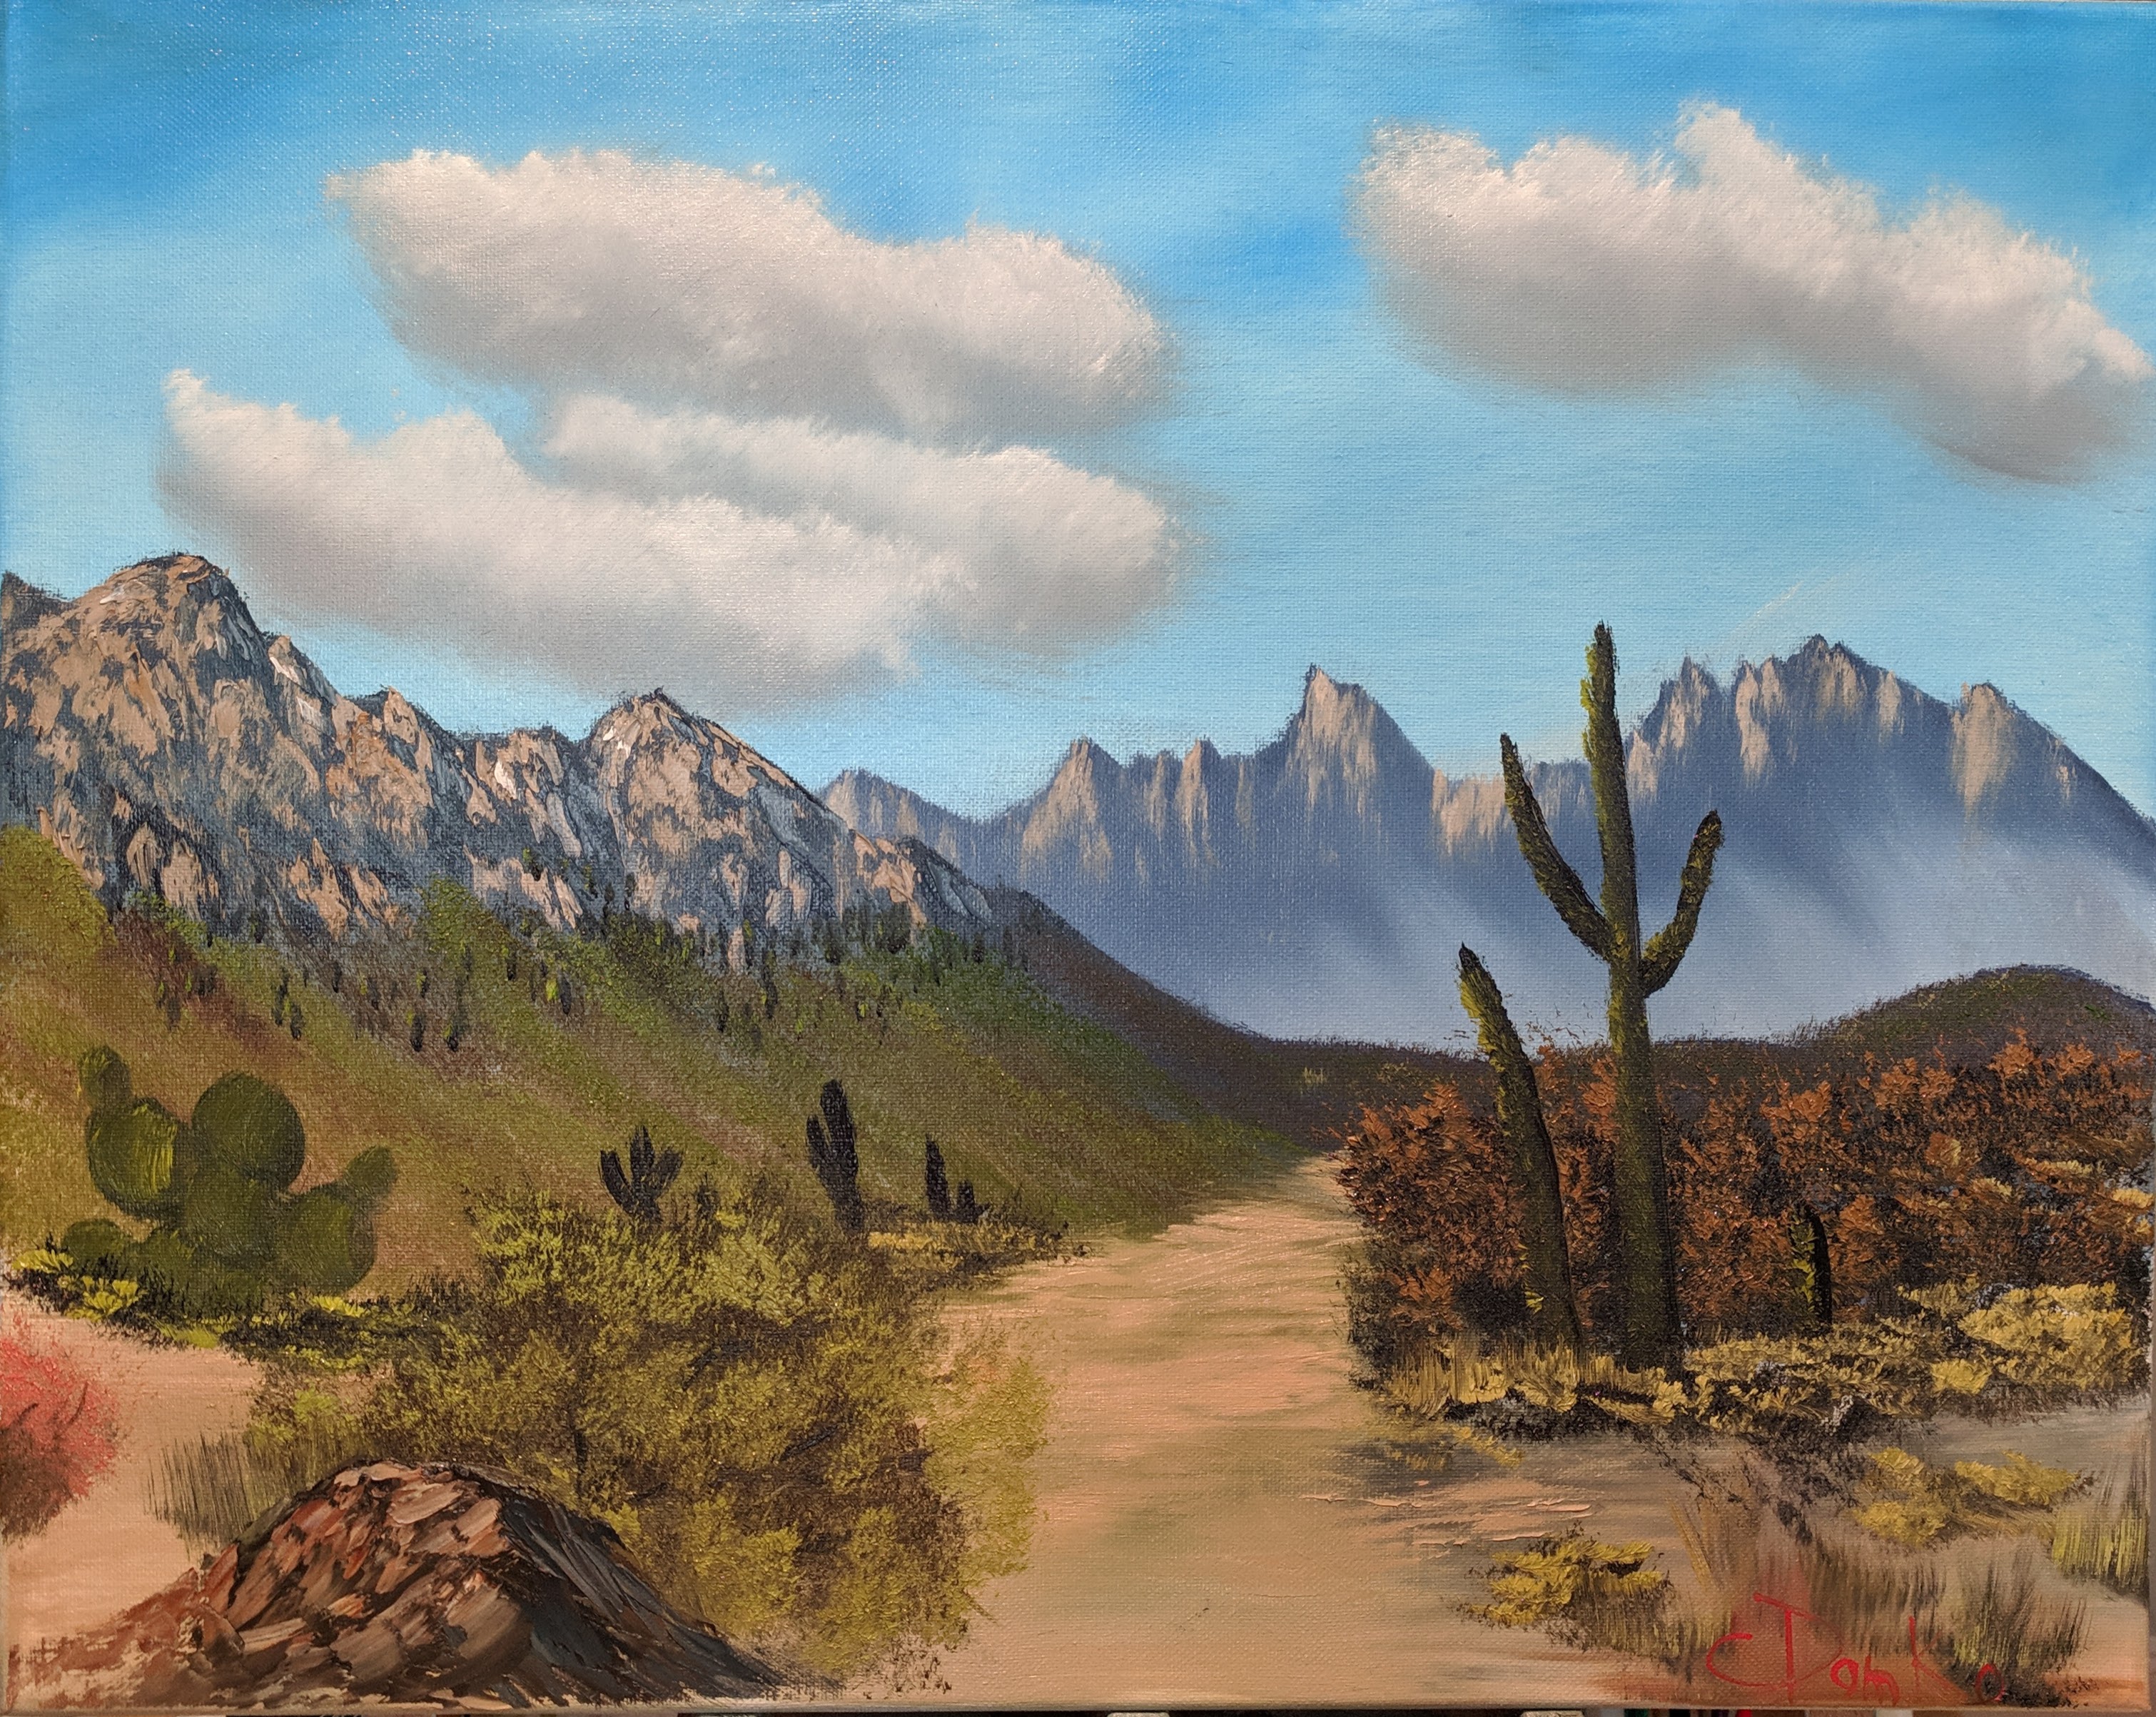 Bob Ross style original landscape oil painting ooak “Autumn